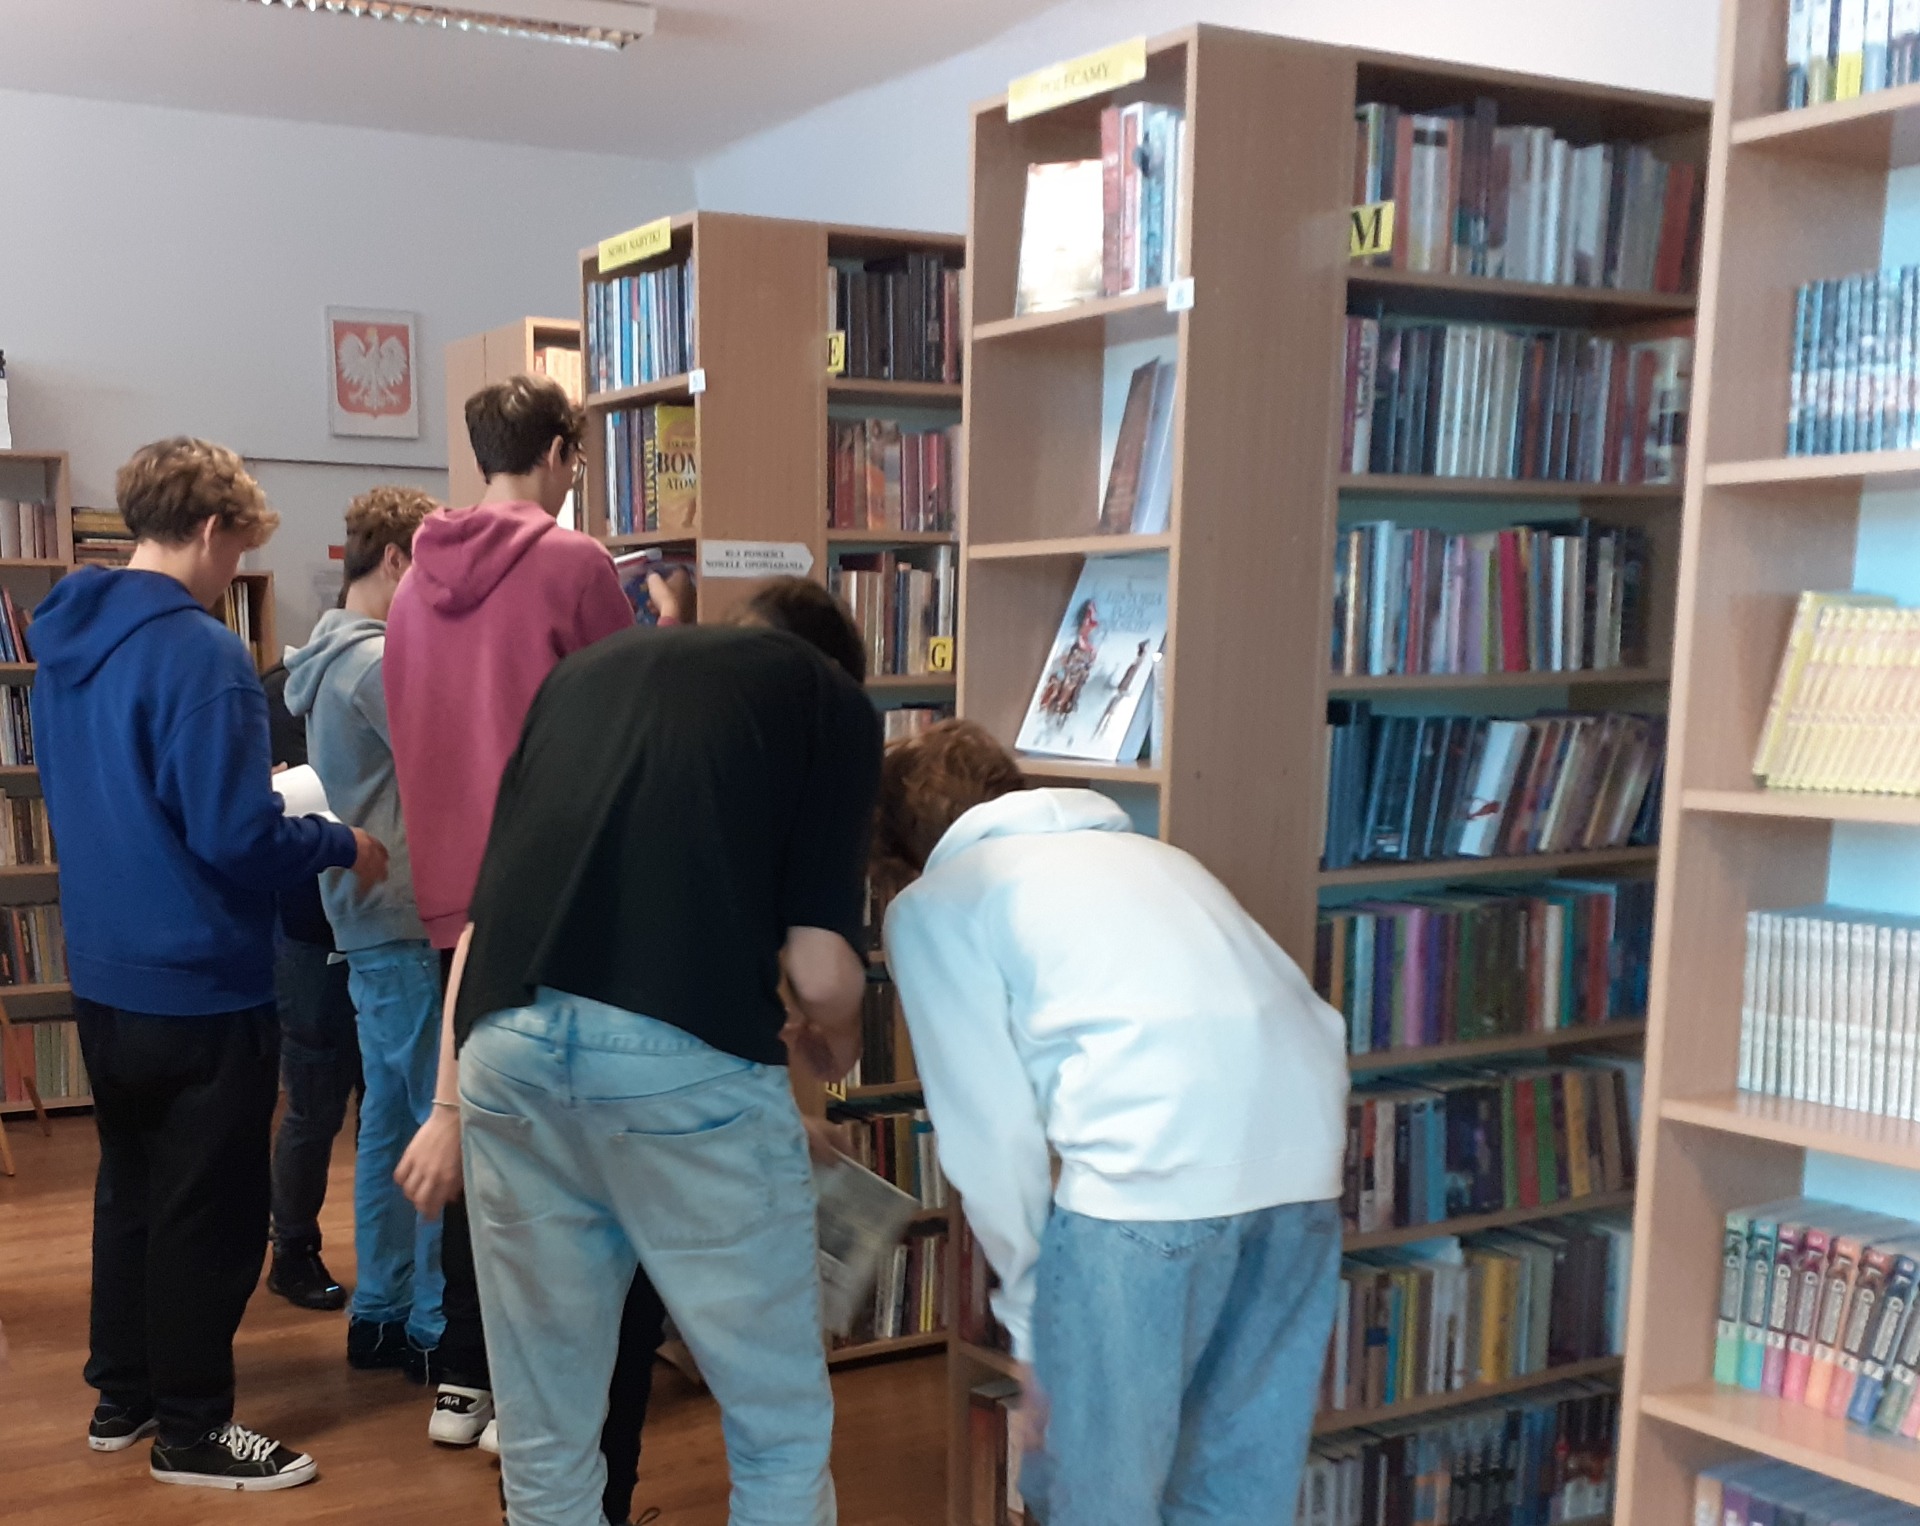 Grupa uczniów poszukuje książek na regałach bibliotecznych.